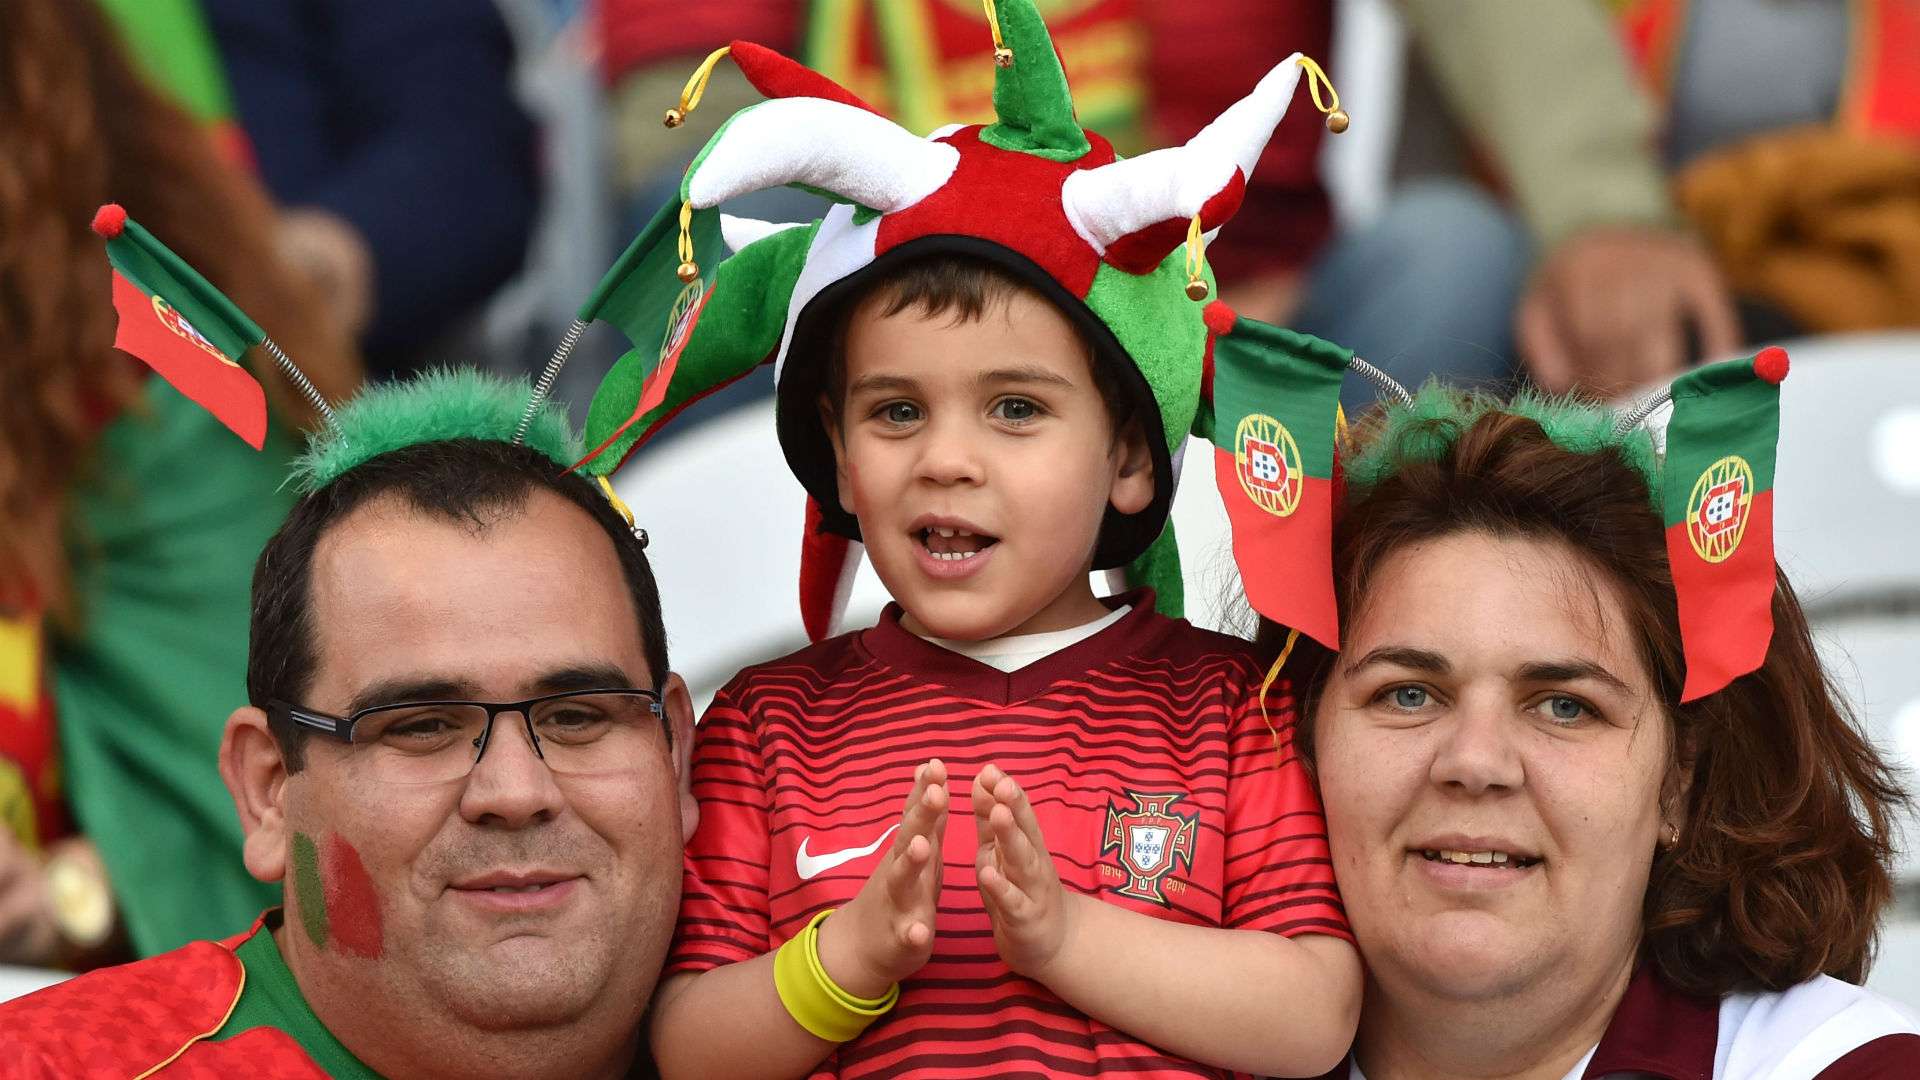 croatia portugal - fans - euro 2016 - 25062016